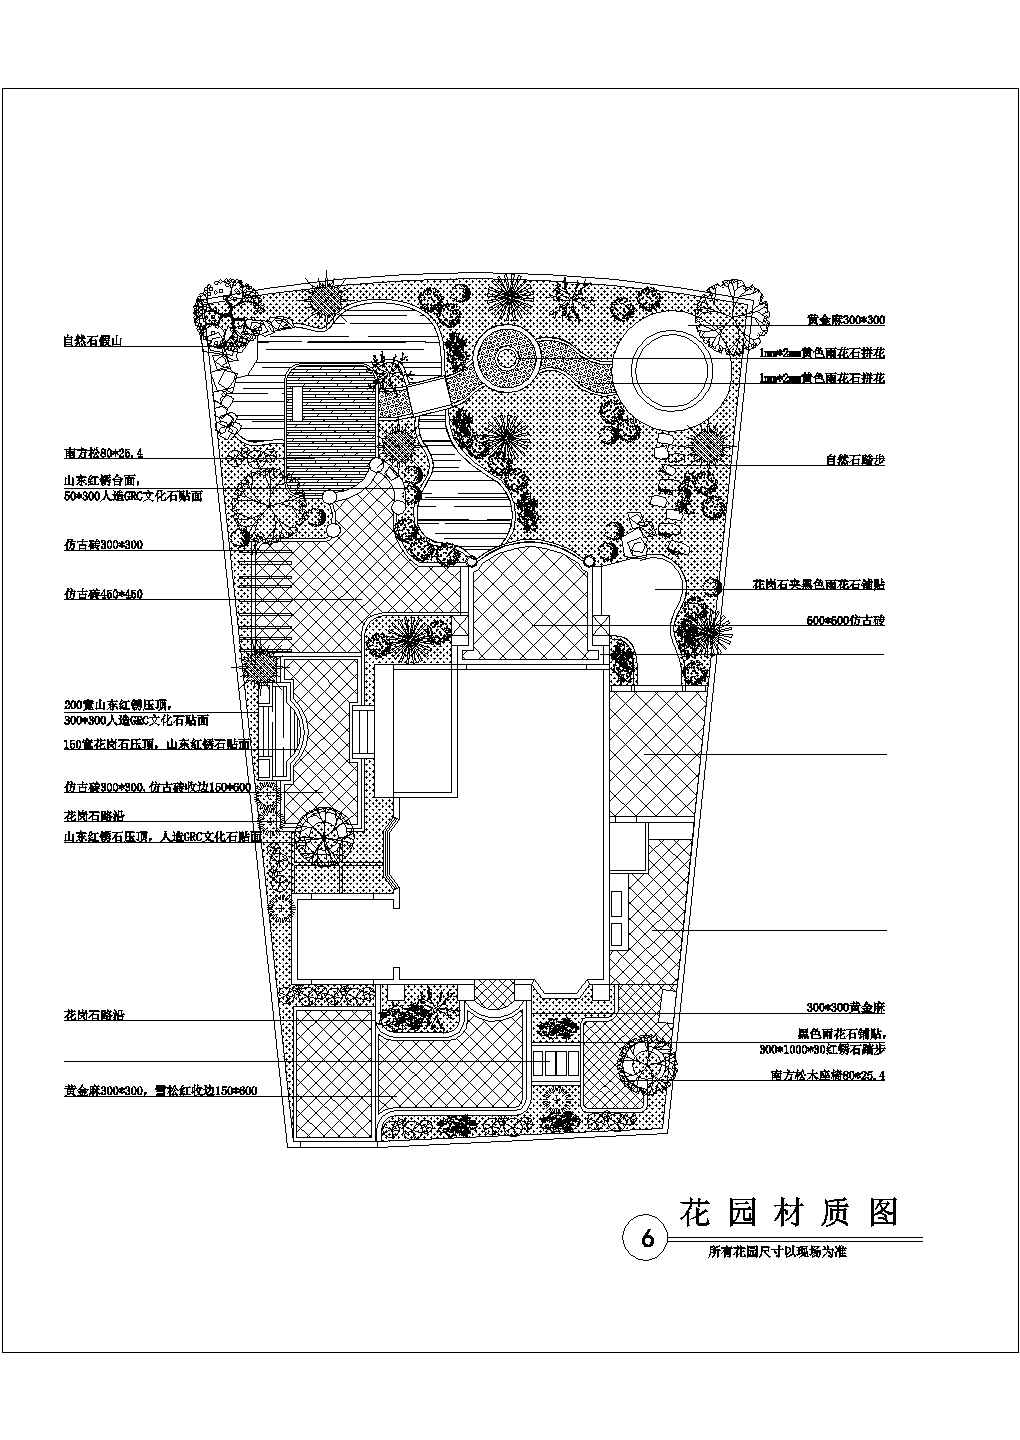 【湖北】某地别墅建筑花园设计施工图